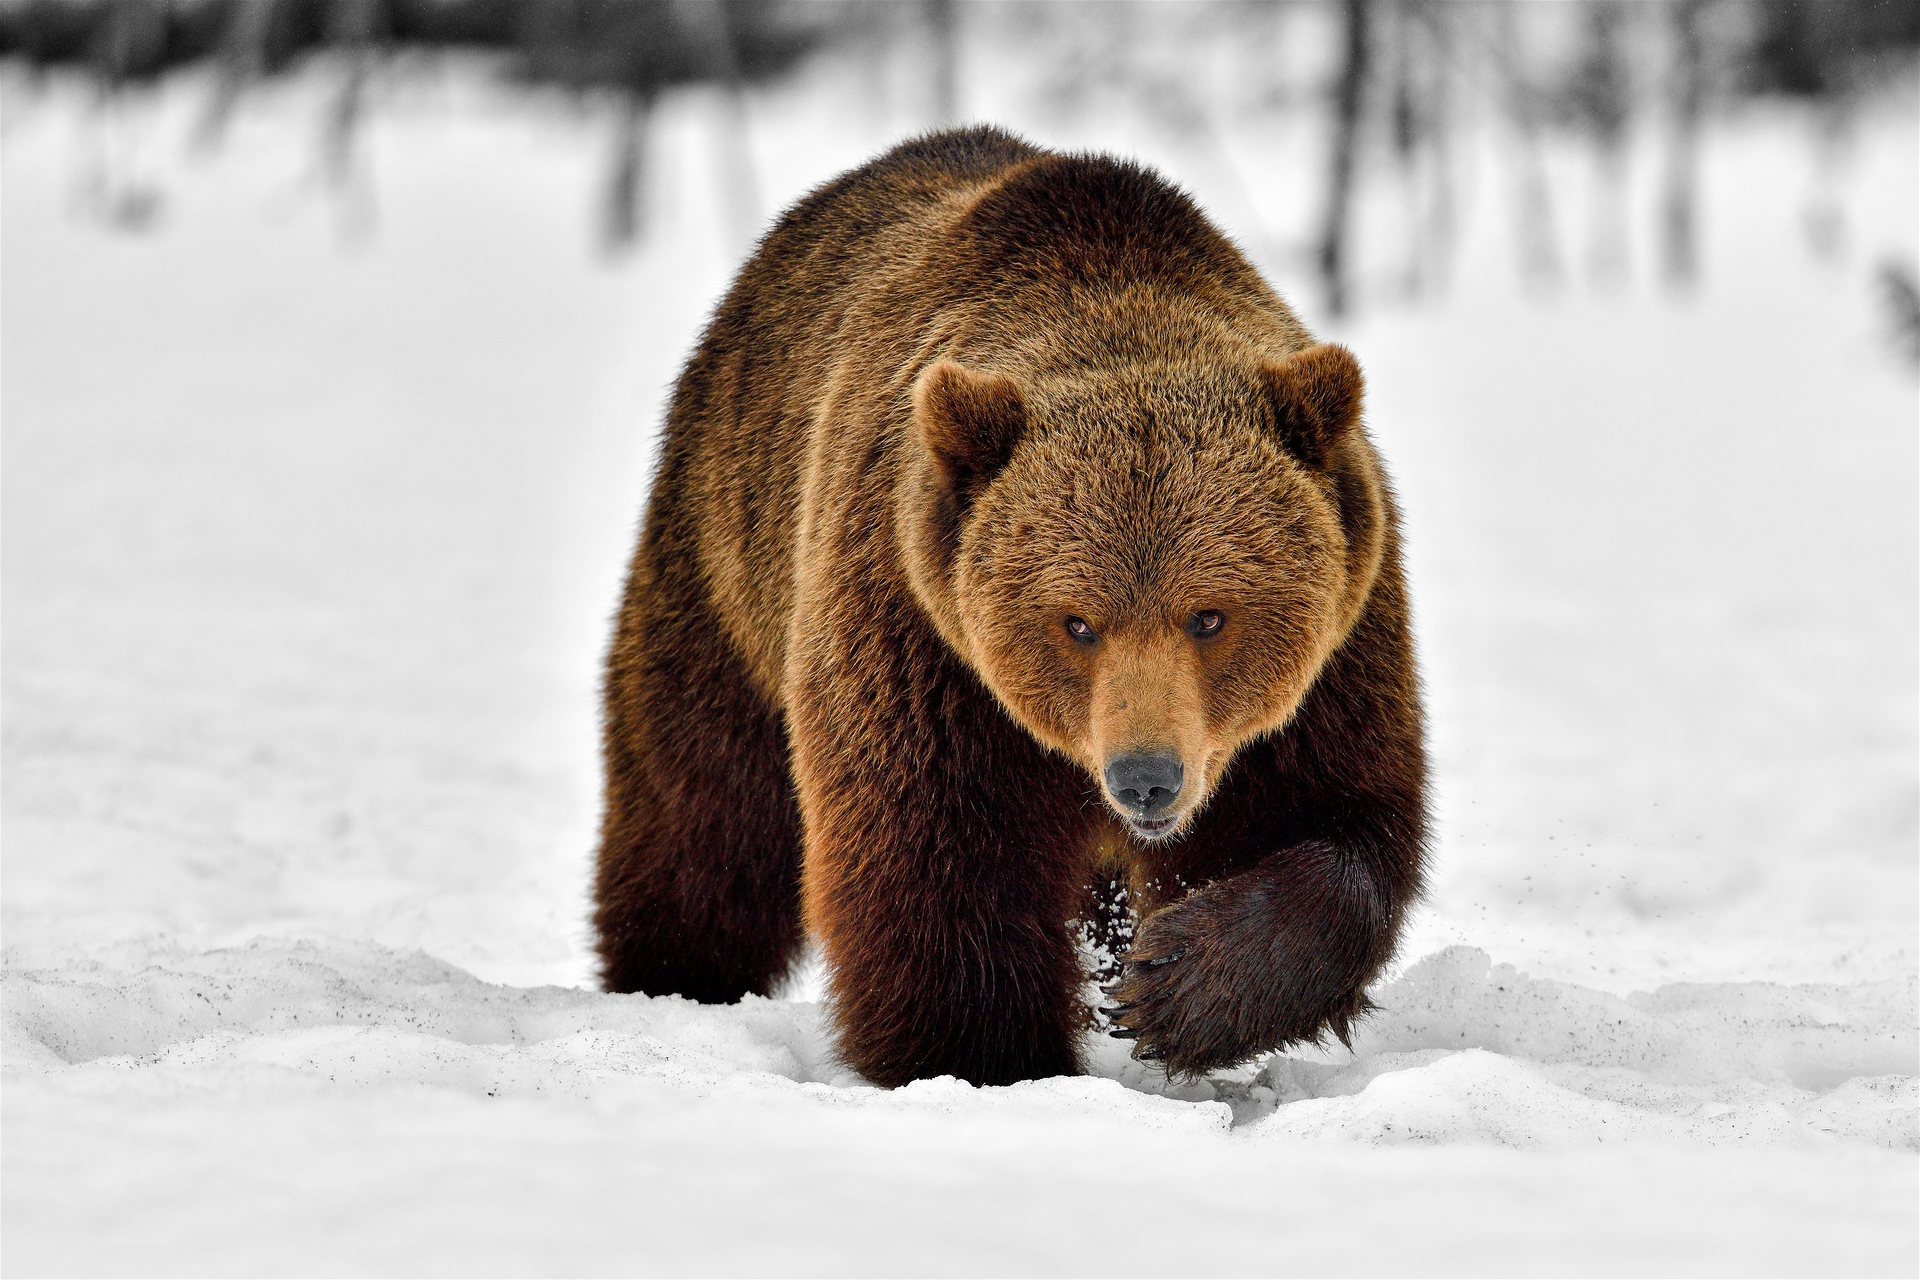 Скачать обои бесплатно Животные, Снег, Медведи, Морда, Медведь картинка на рабочий стол ПК